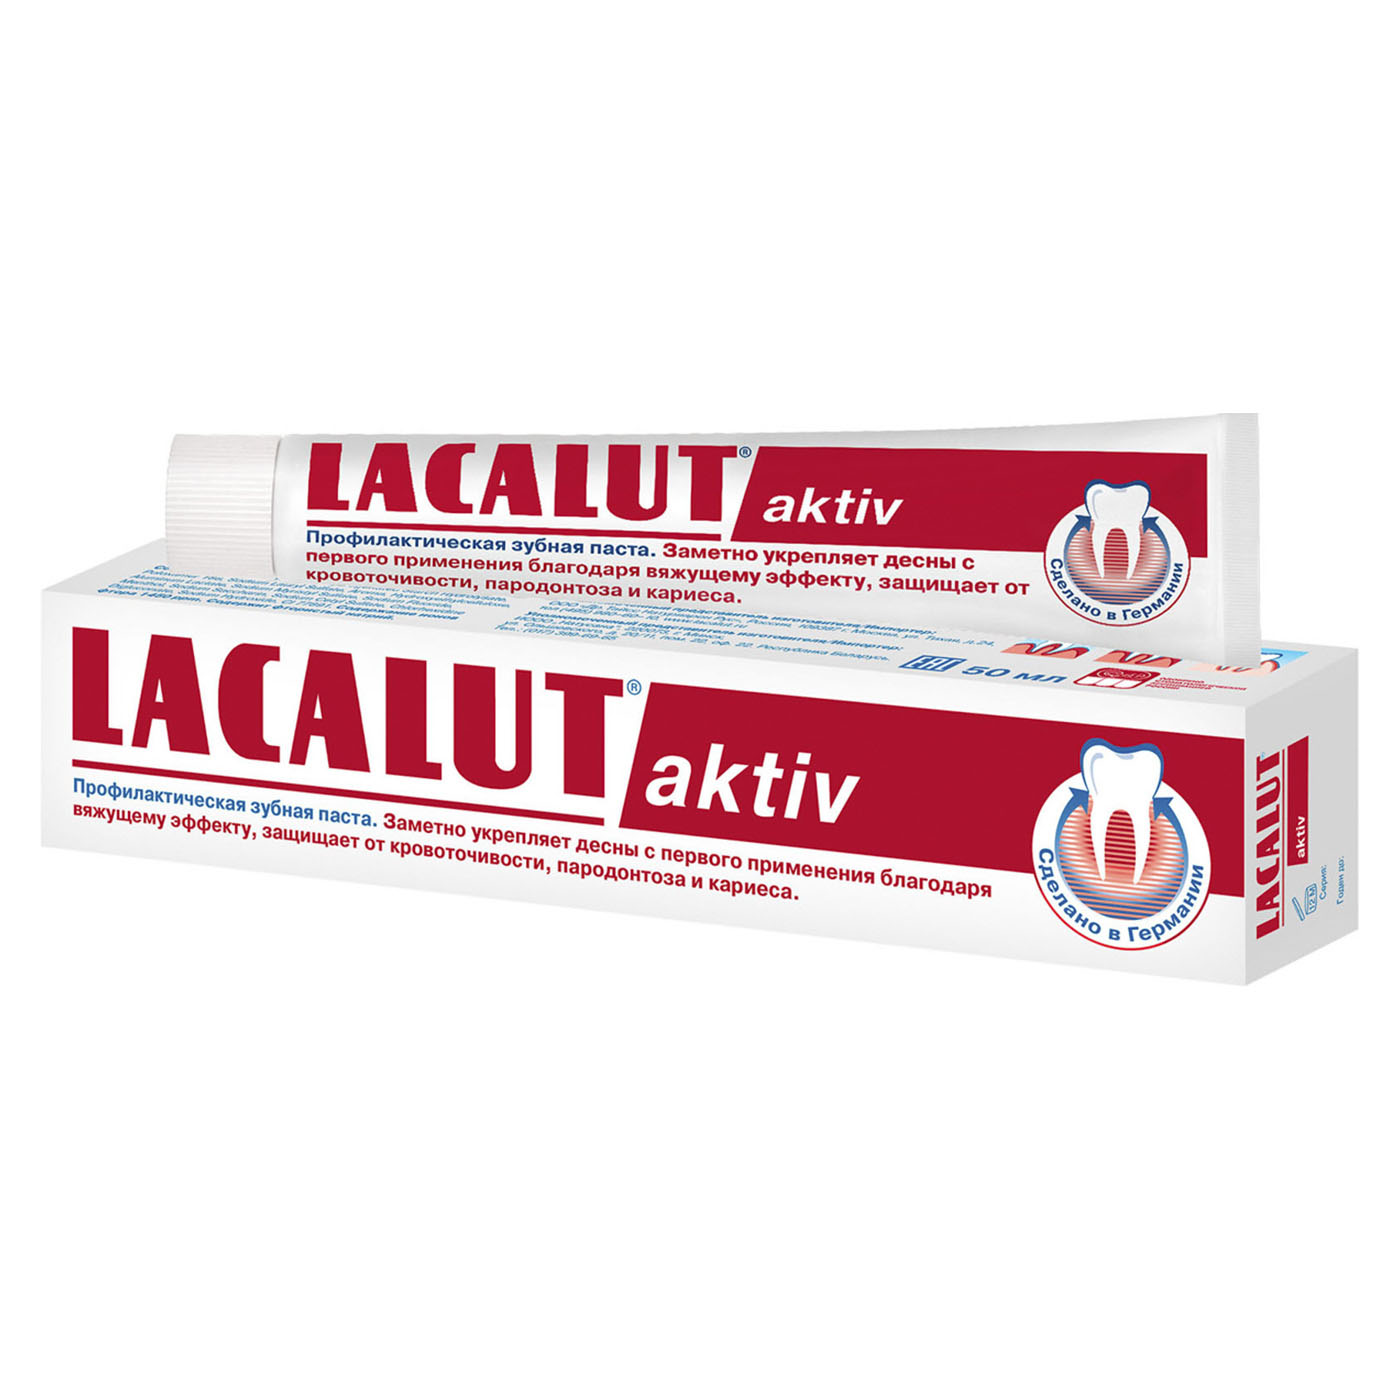 Купить Lacalut Зубная паста Актив 50 мл (Lacalut, Зубные пасты), Германия